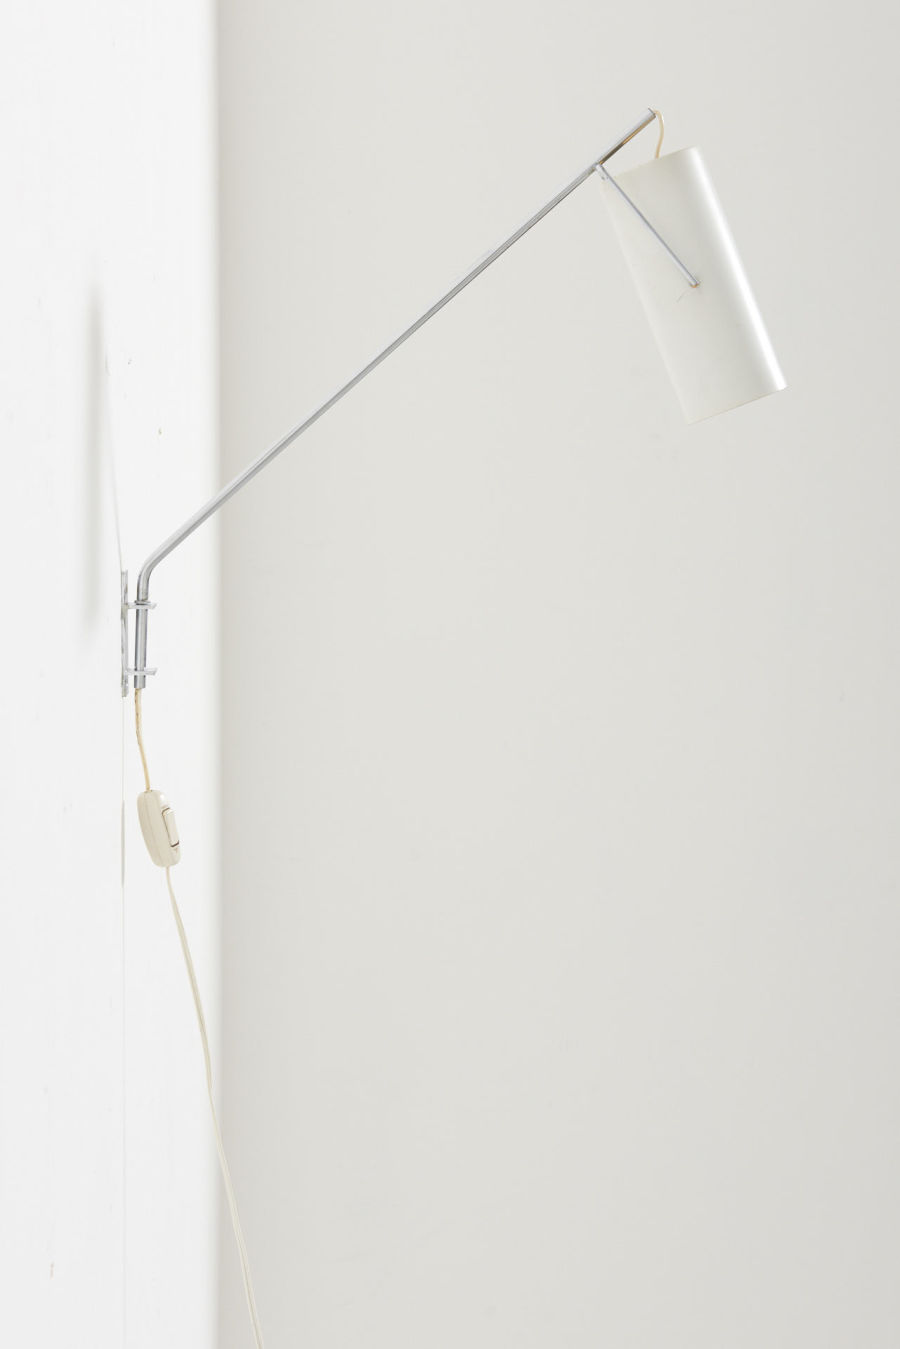 modestfurniture-vintage-2876-raak-swing-arm-wall-lamp-model-model-c1582-3703